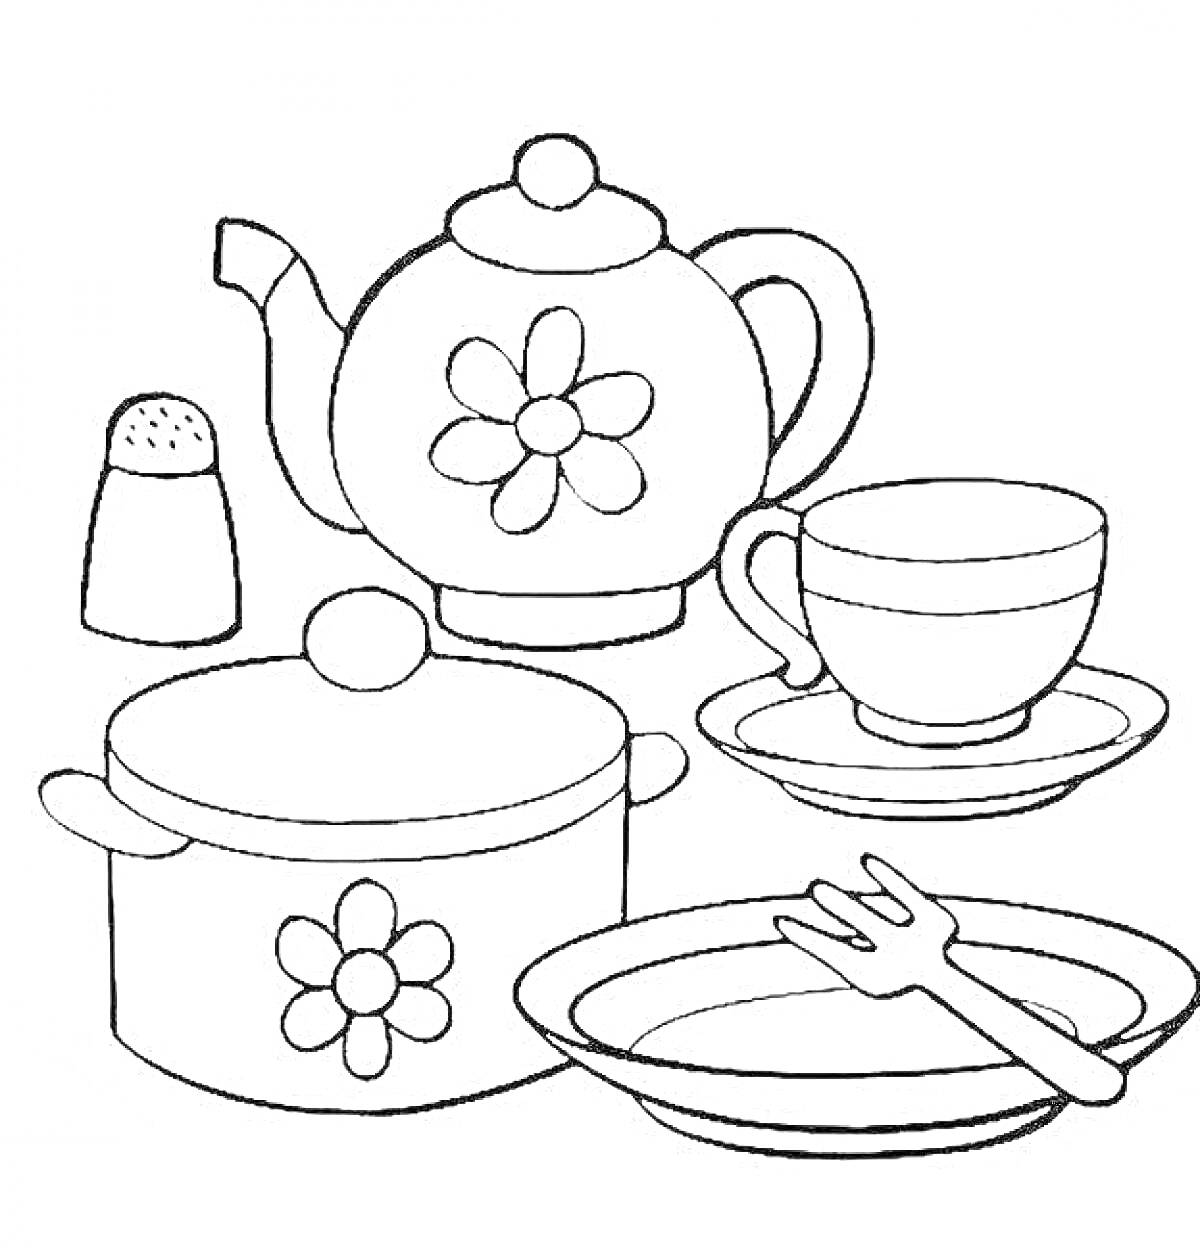 Кастрюля с крышкой, чайник, чашка с блюдцем, тарелка с вилкой, солонка